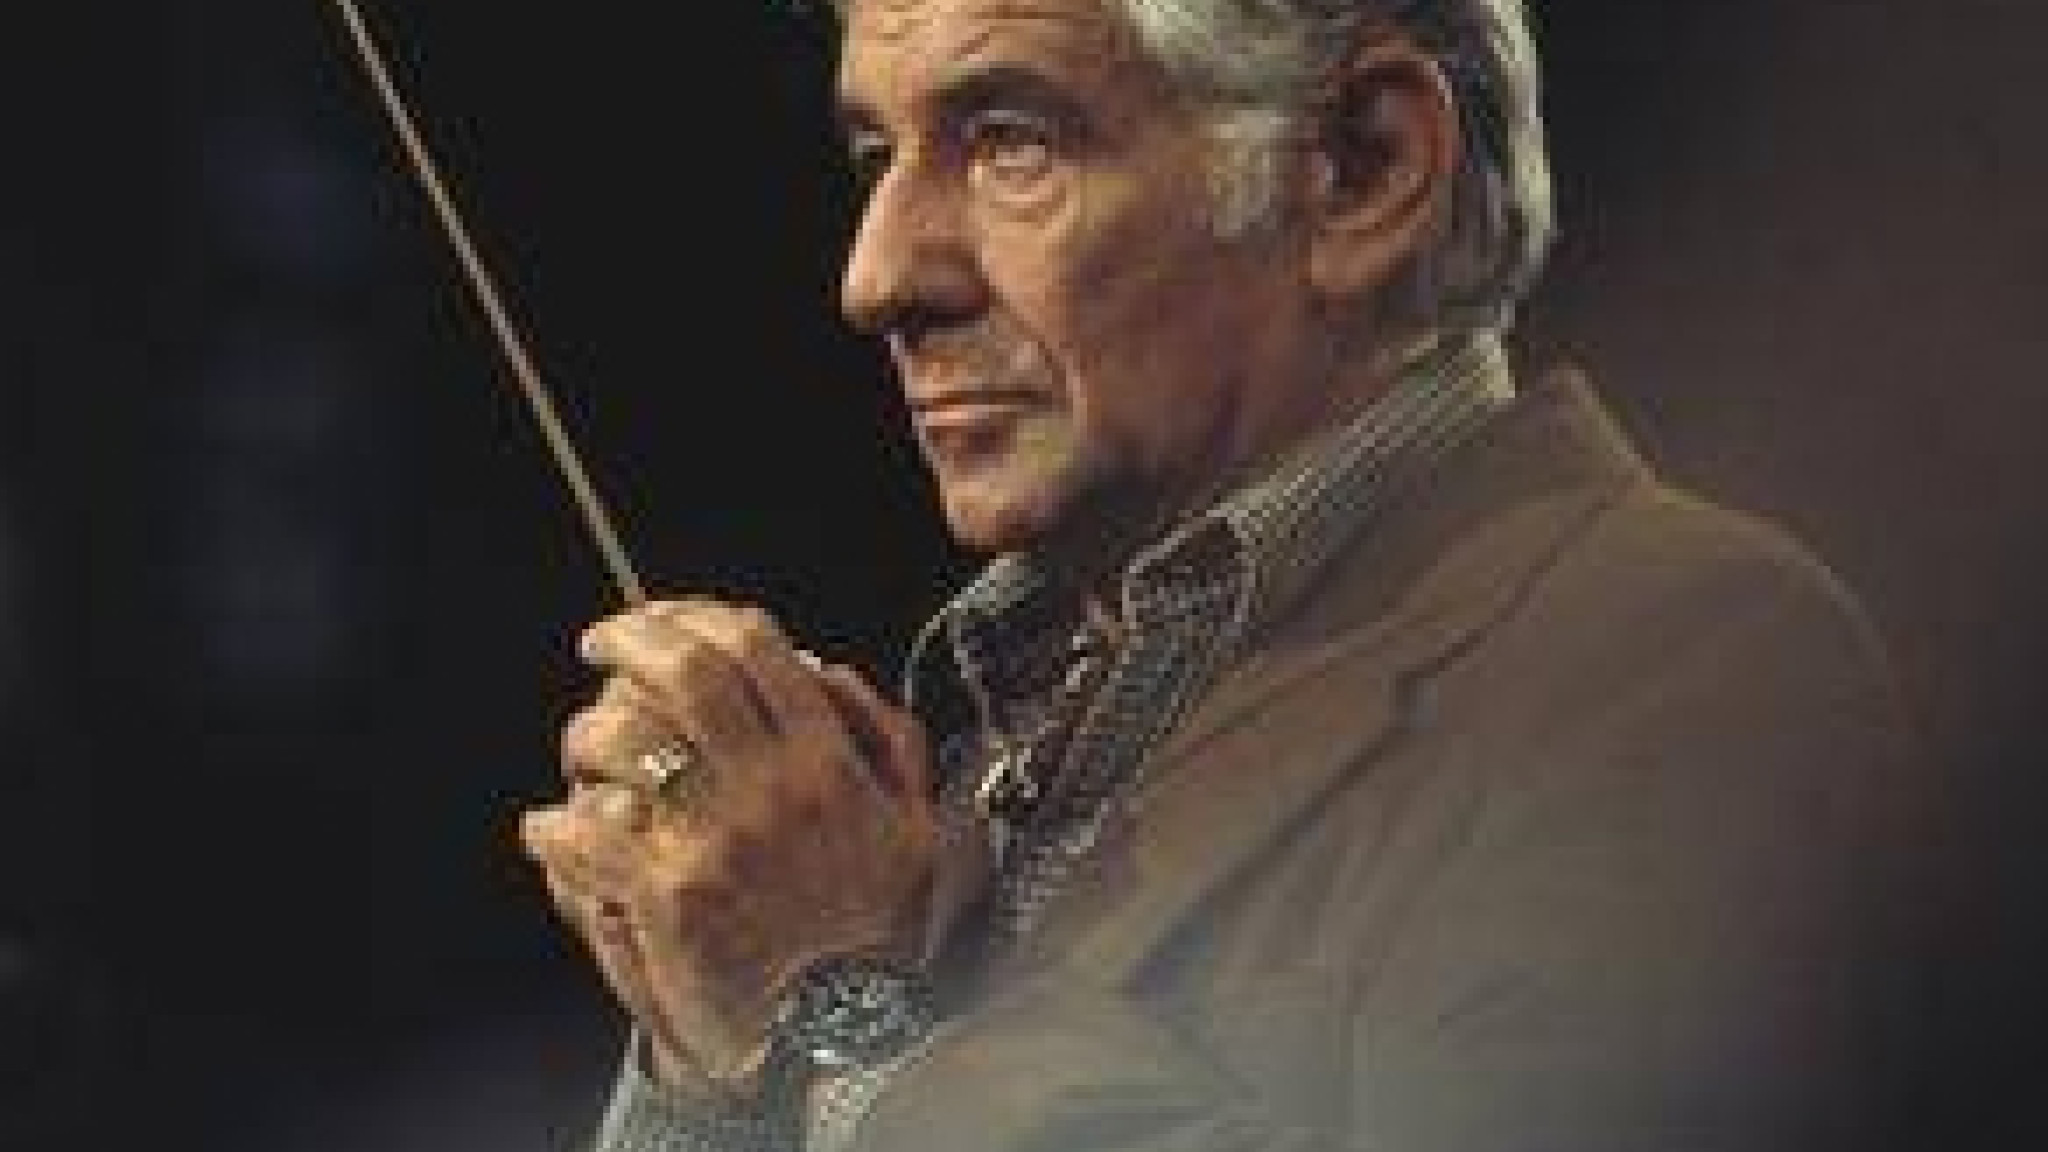 Leonard Bernstein ©Mike Evans